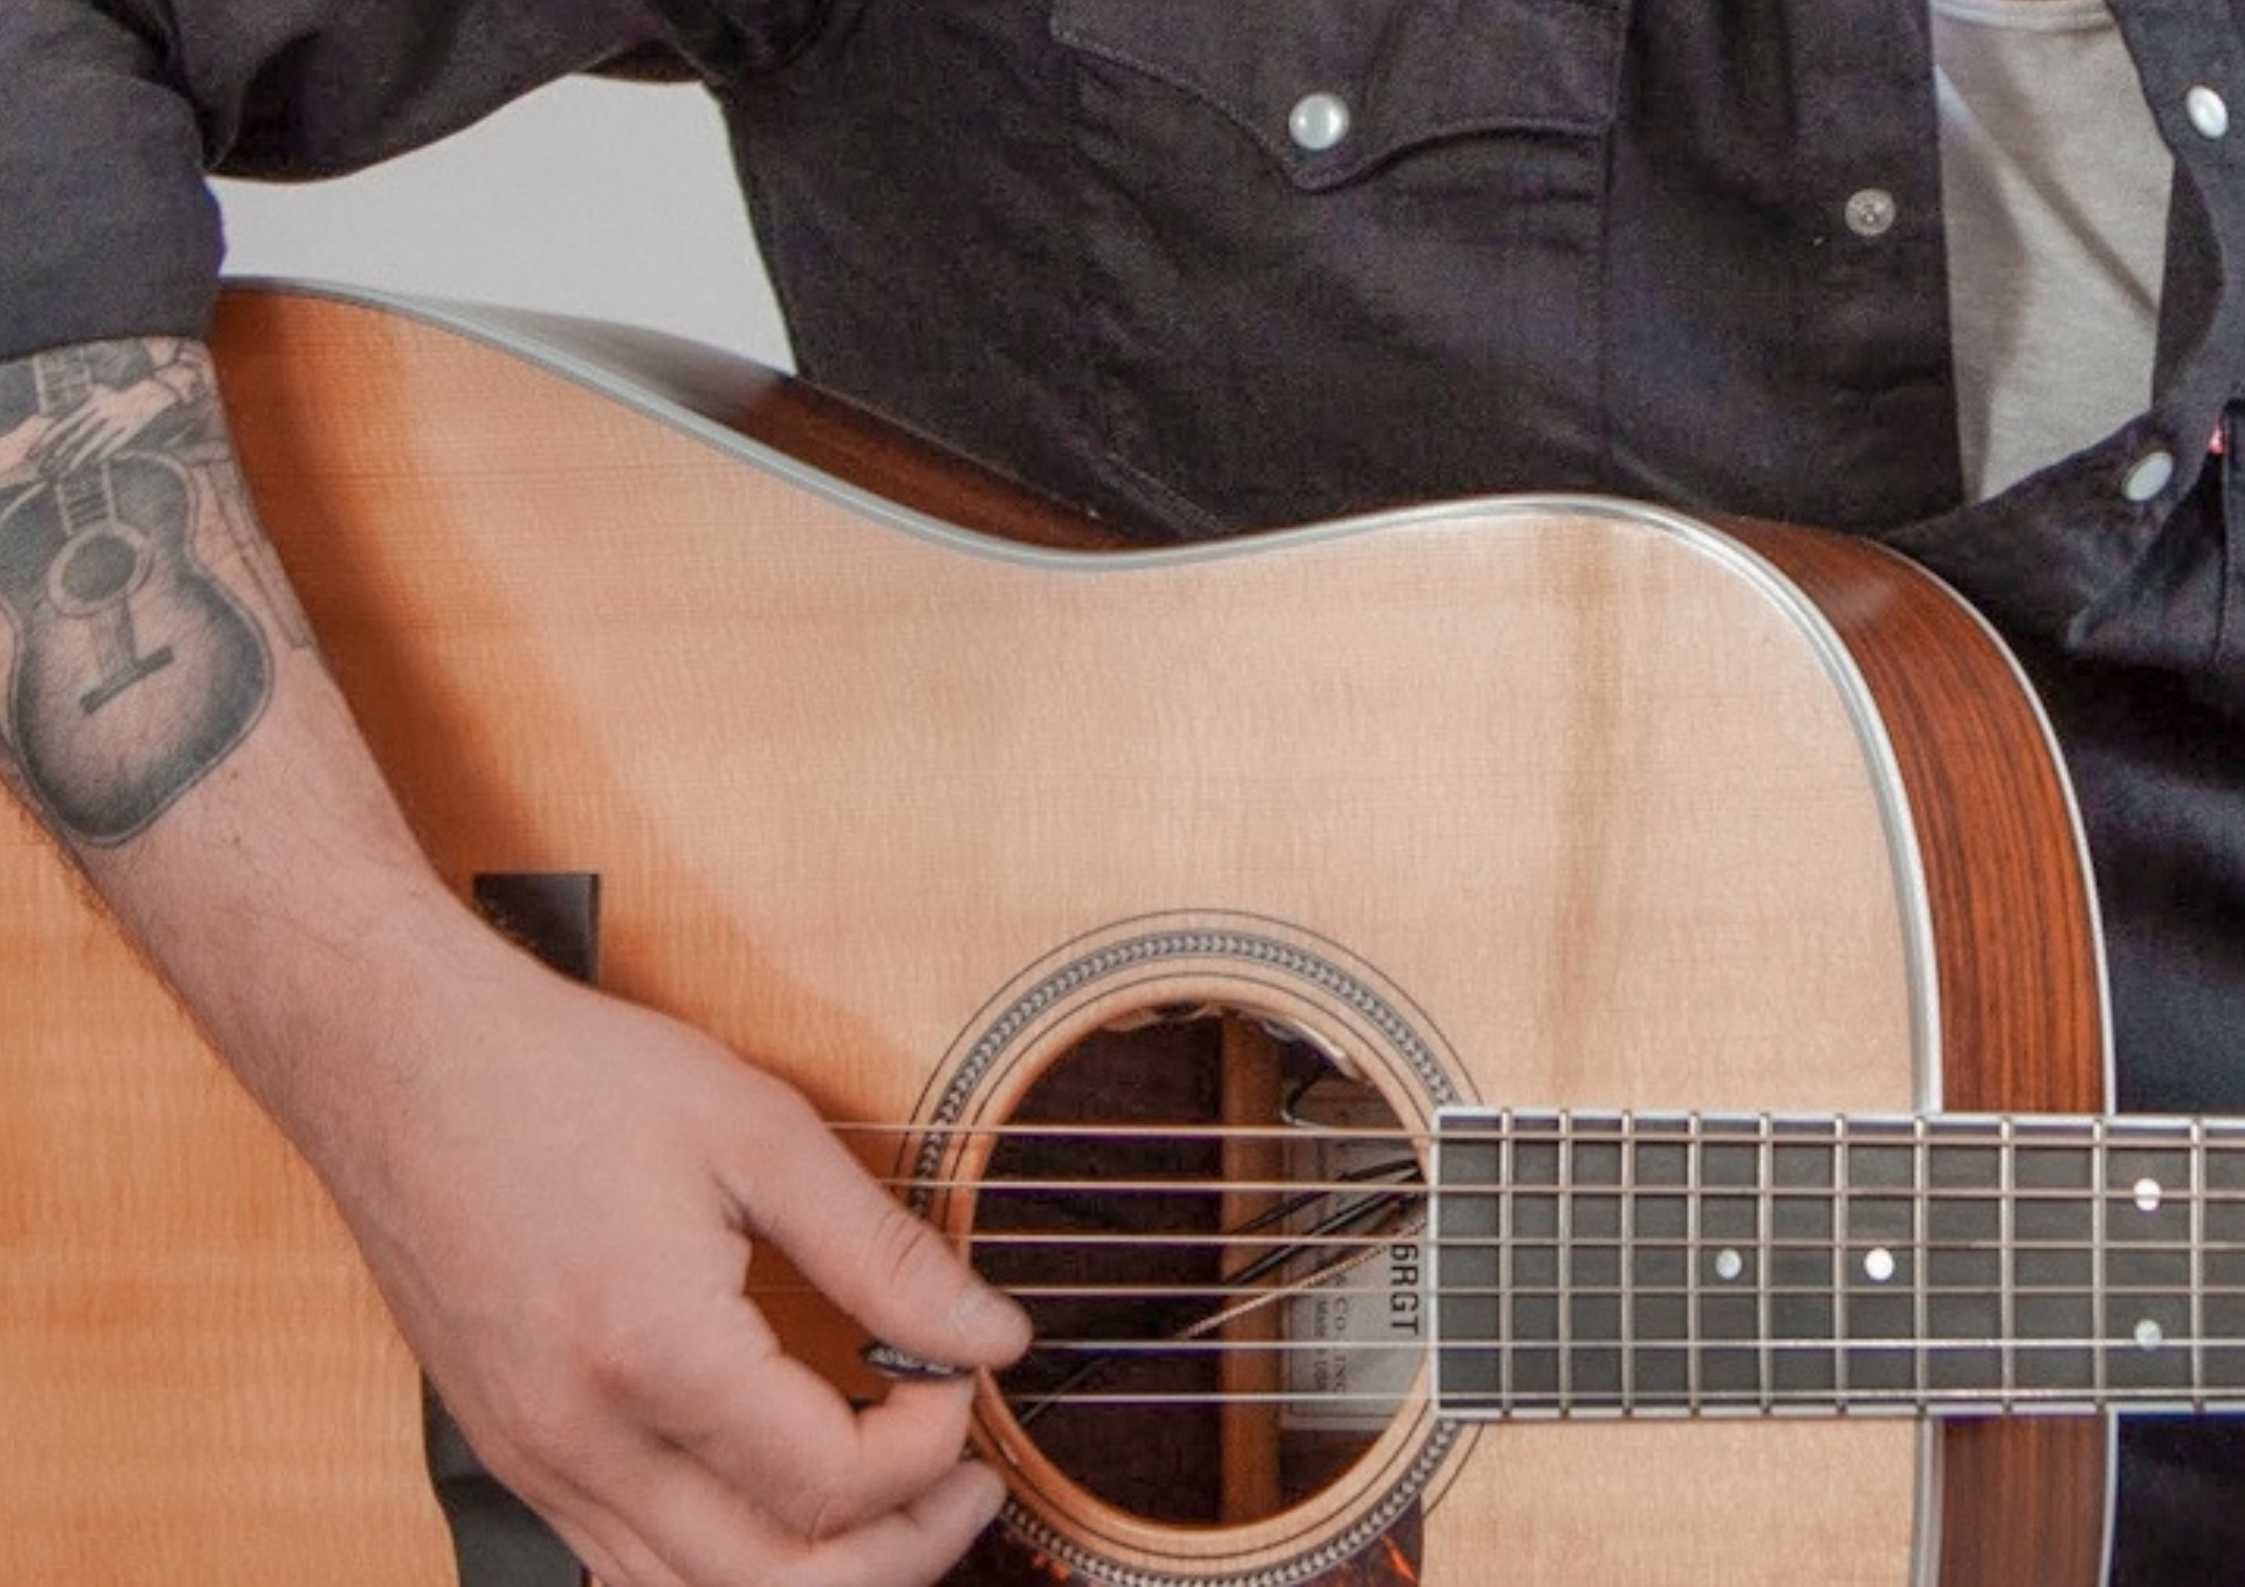 Nauka gry na gitarze/lekcje gry na gitarze z dojazdem do Ucznia